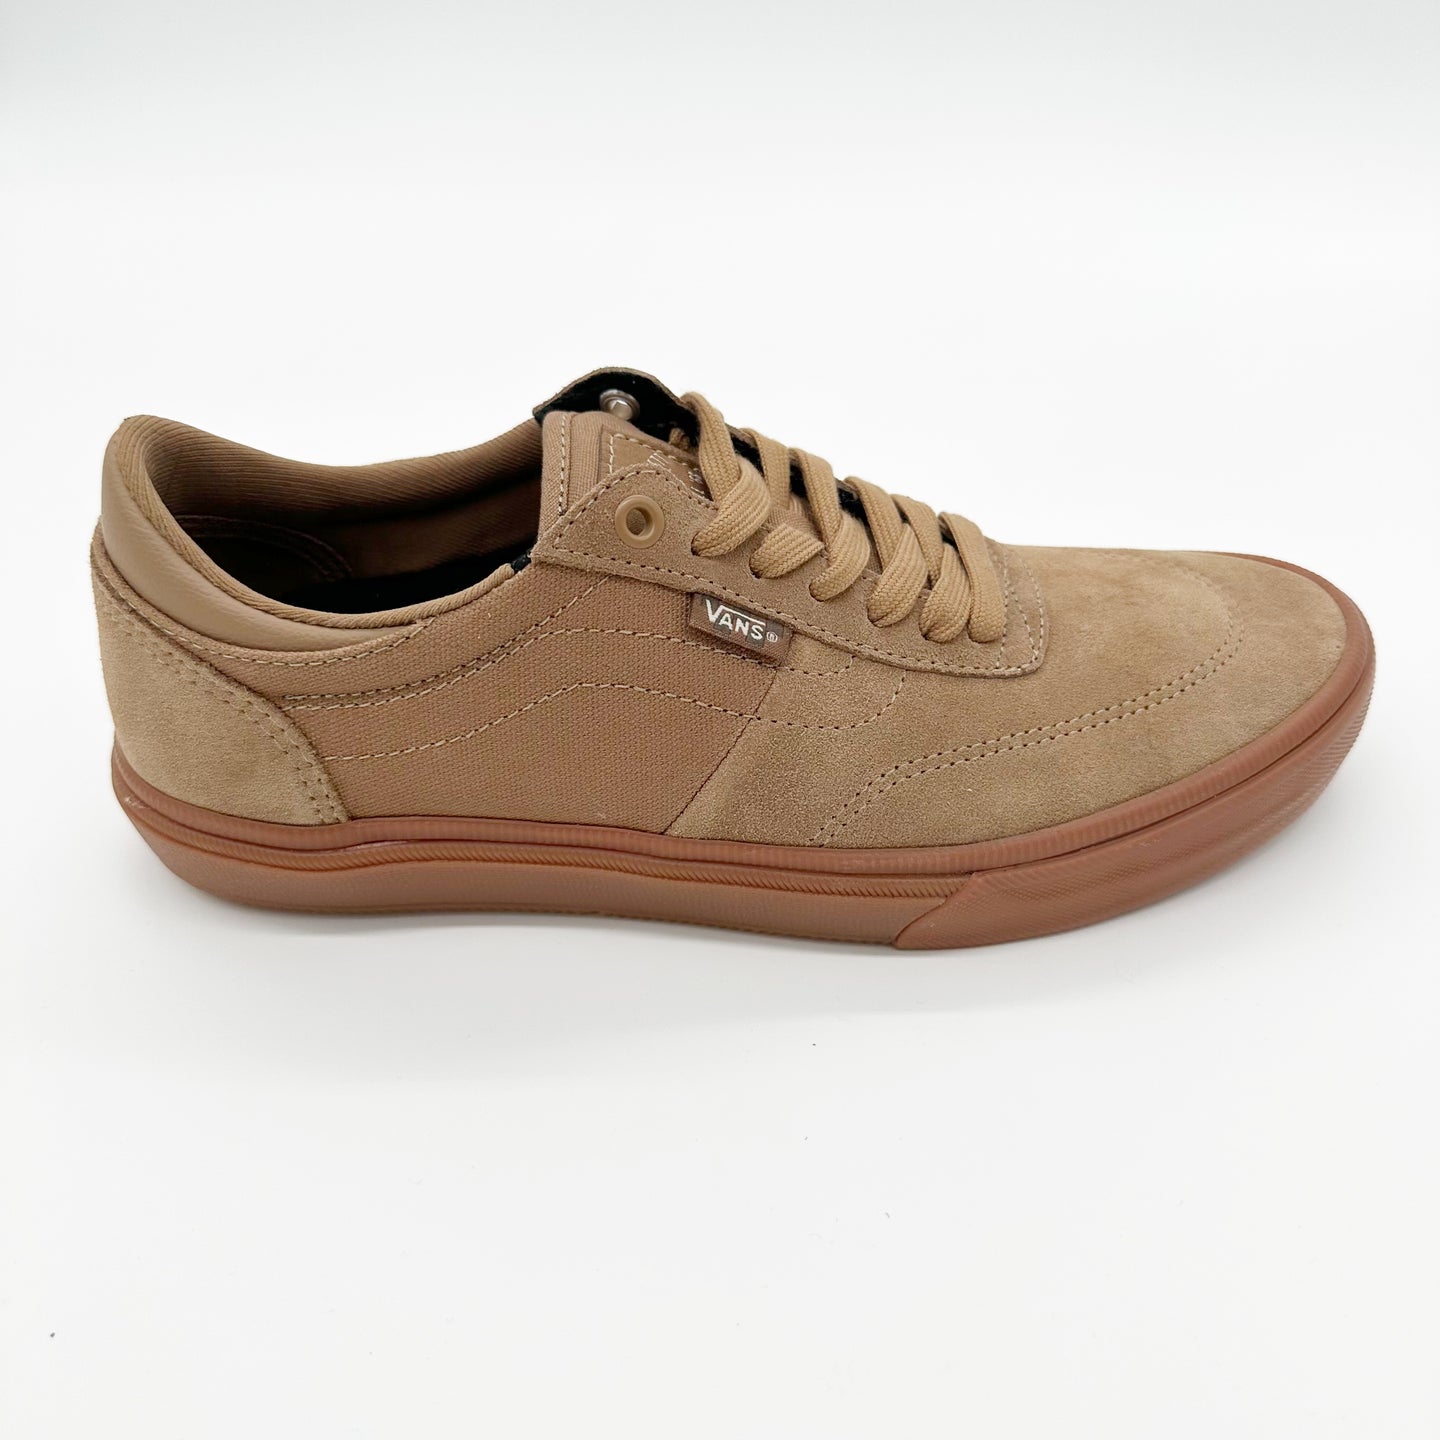 Vans Gilbert Crockett Skate Shoes-Brown/Gum